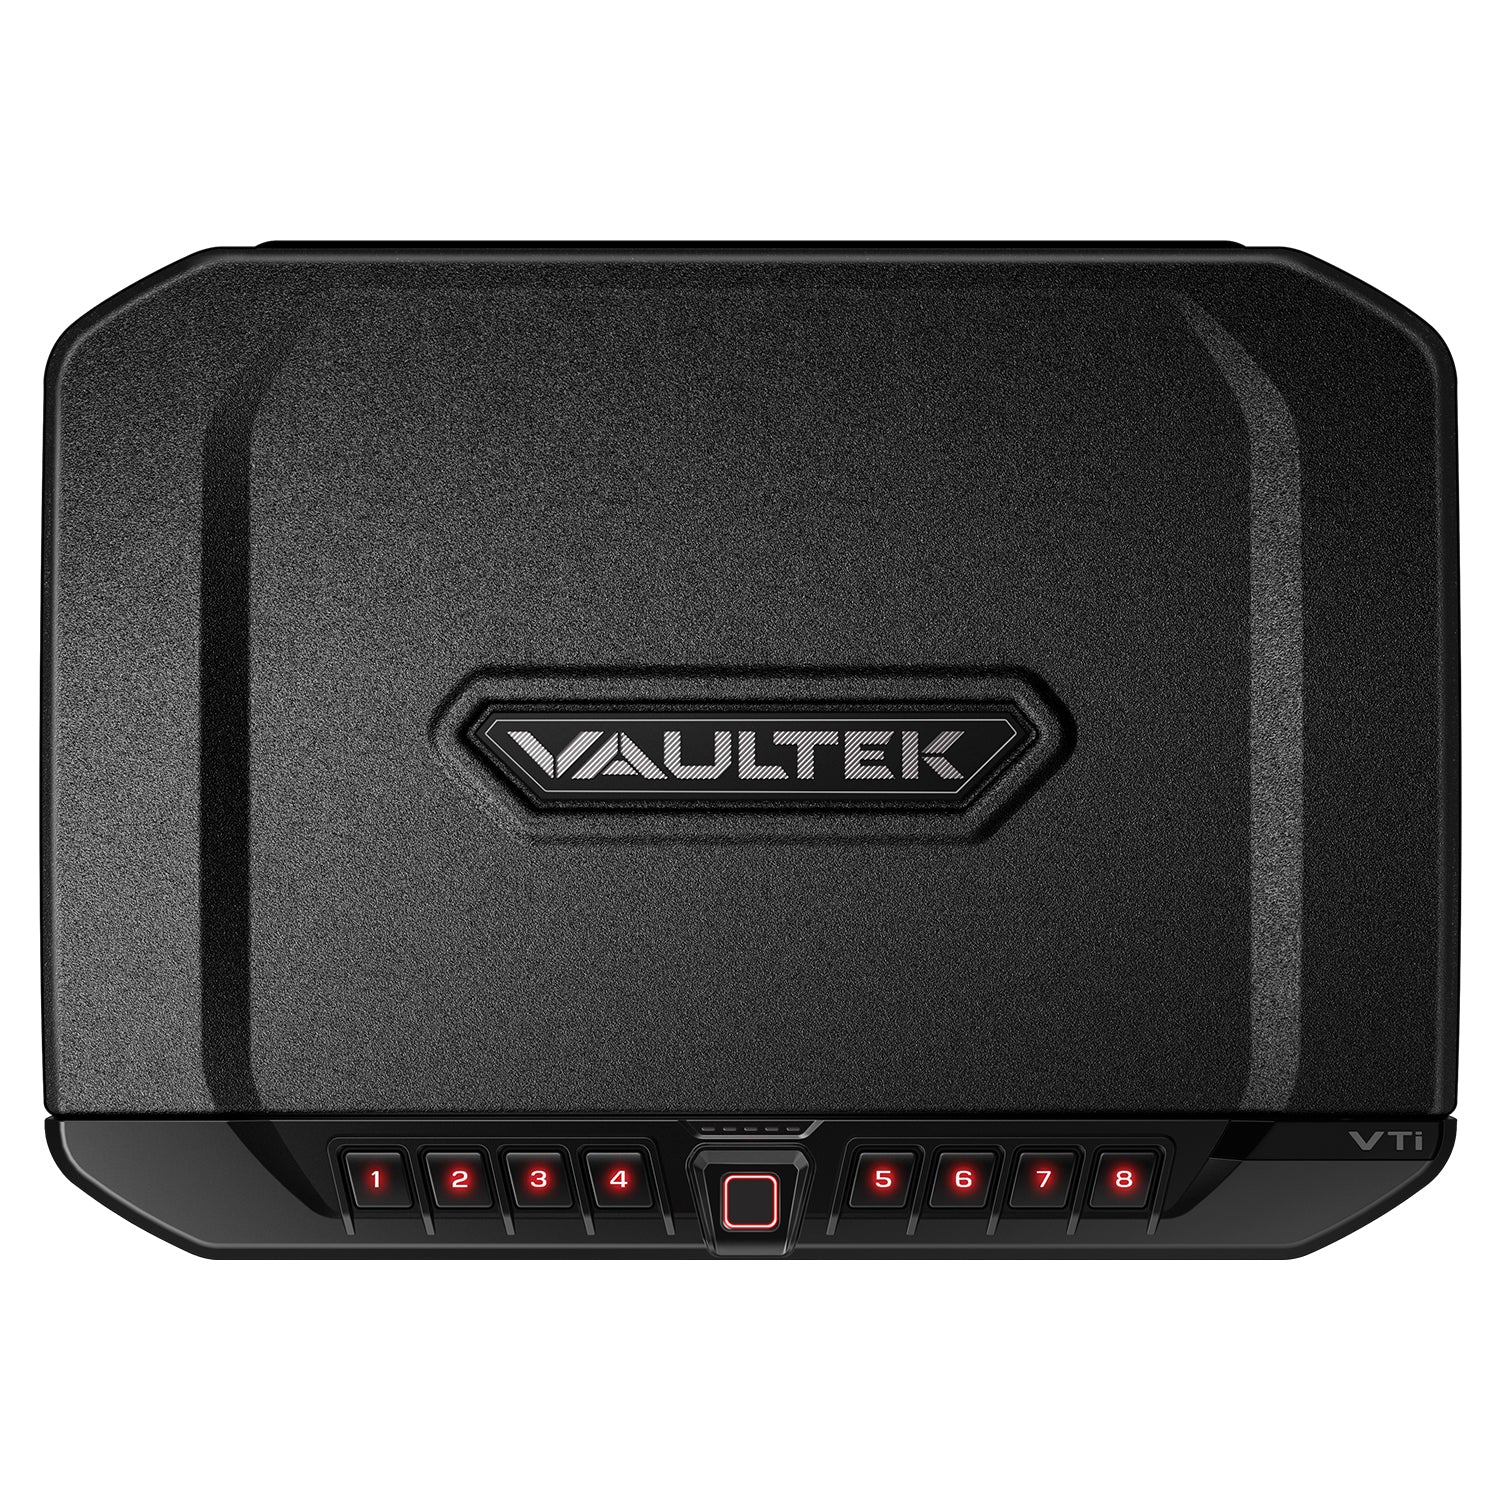 Vaultek® ve full size rugged safe - MODLOCK